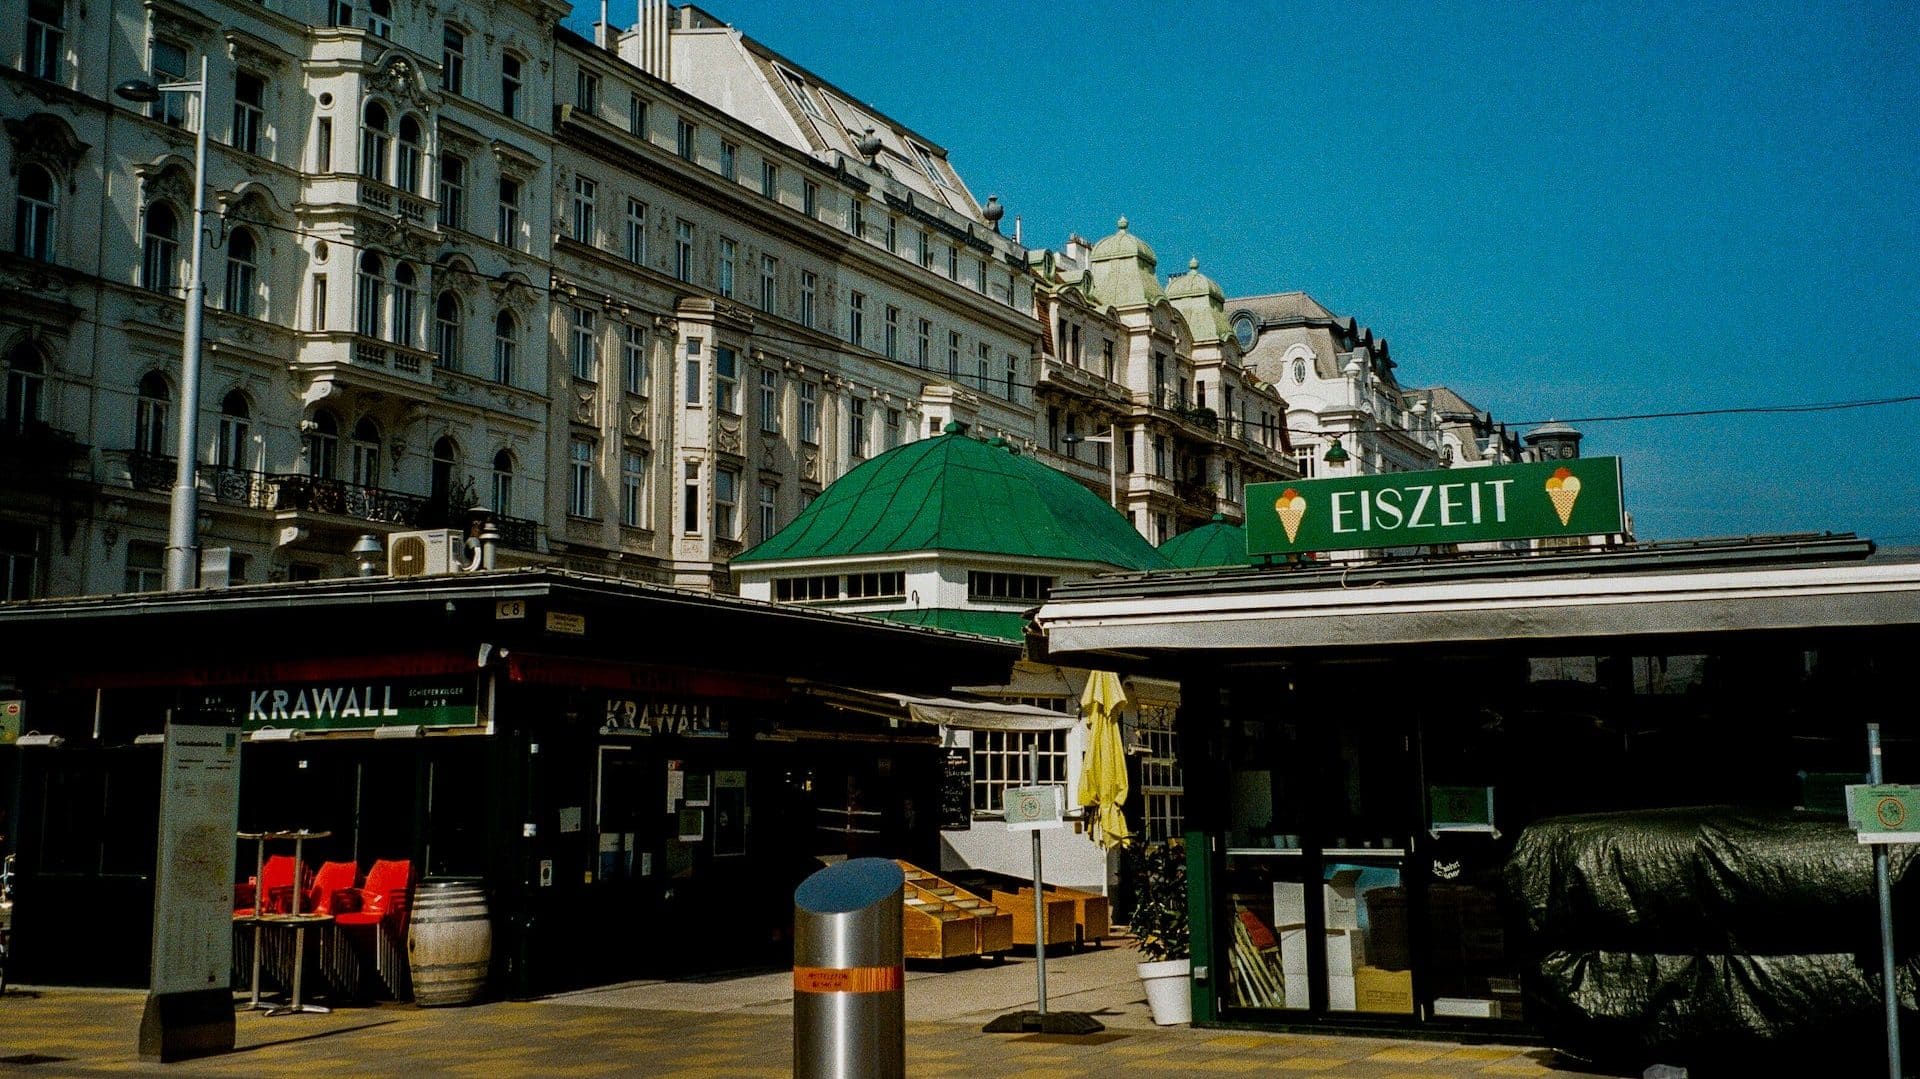 Naschmarkt, el mercado mÃ¡s popular de Viena, se encuentra entre Wieden y Mariahilf